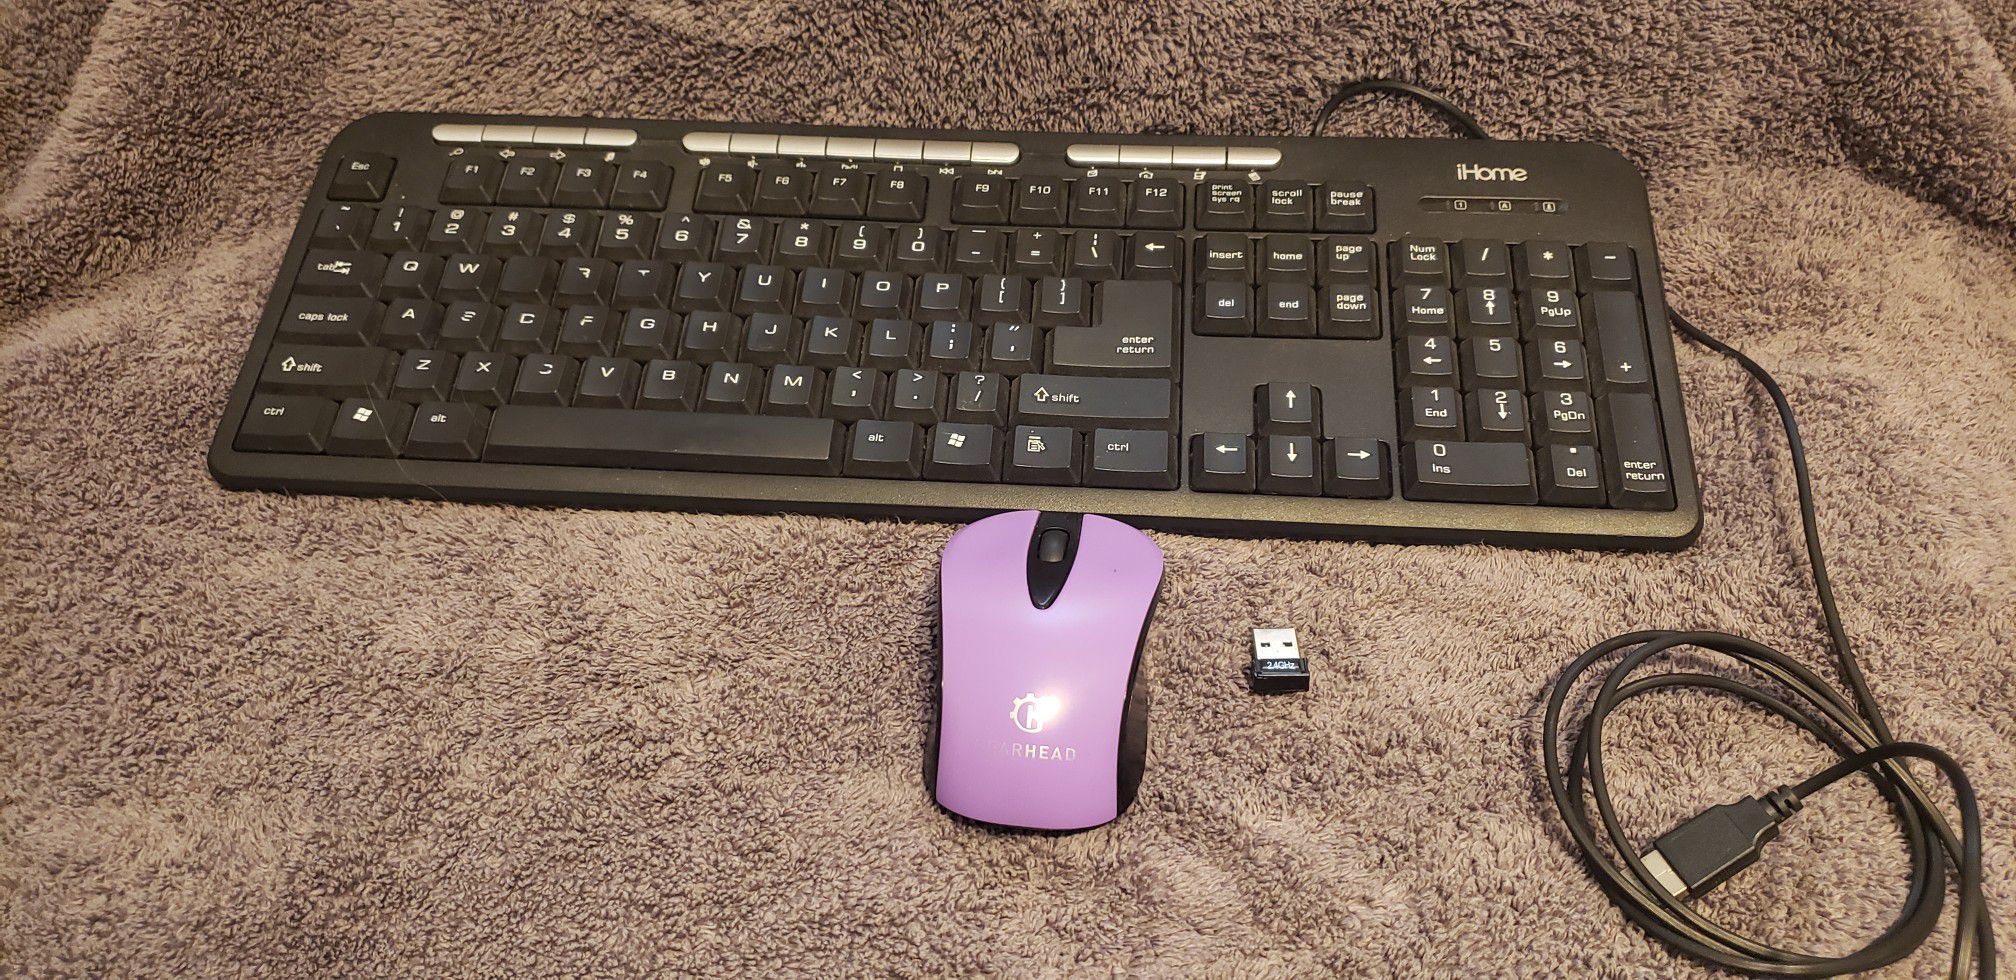 Keyboard, wireless mouse